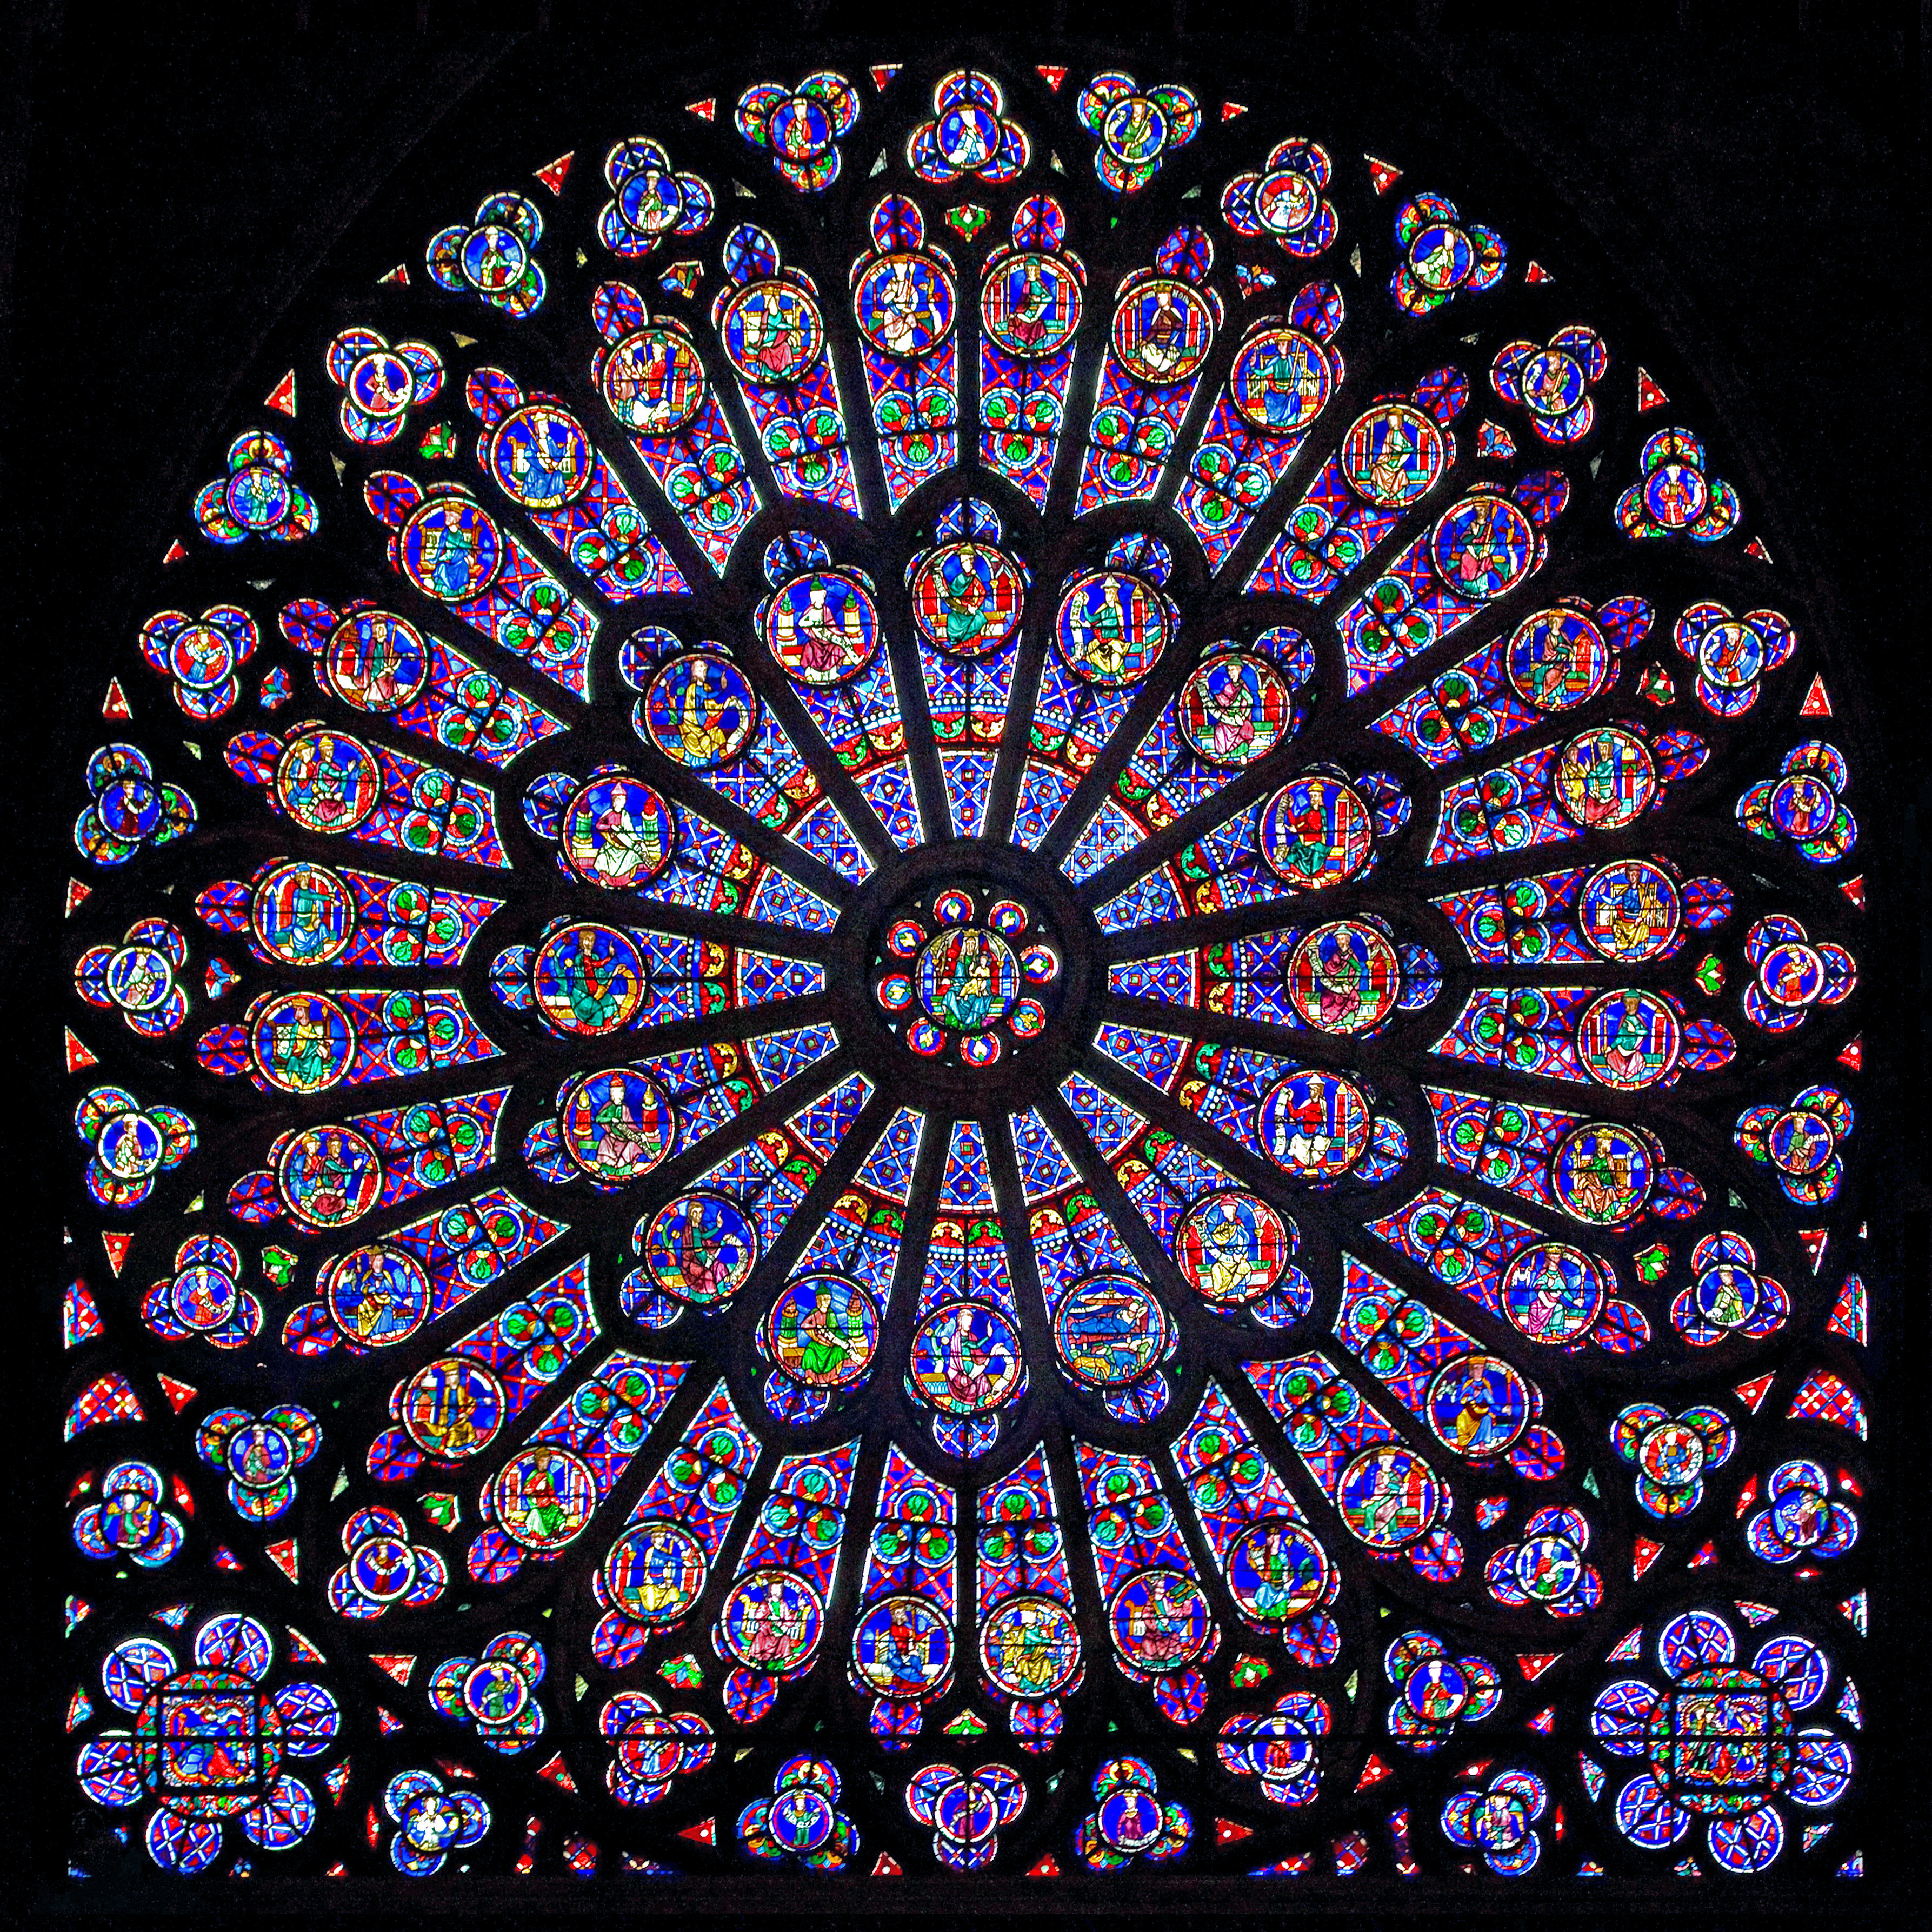 Catedral de Notre-Dame by Artista Desconhecido - 1163-1345 - 138 x 48 m 